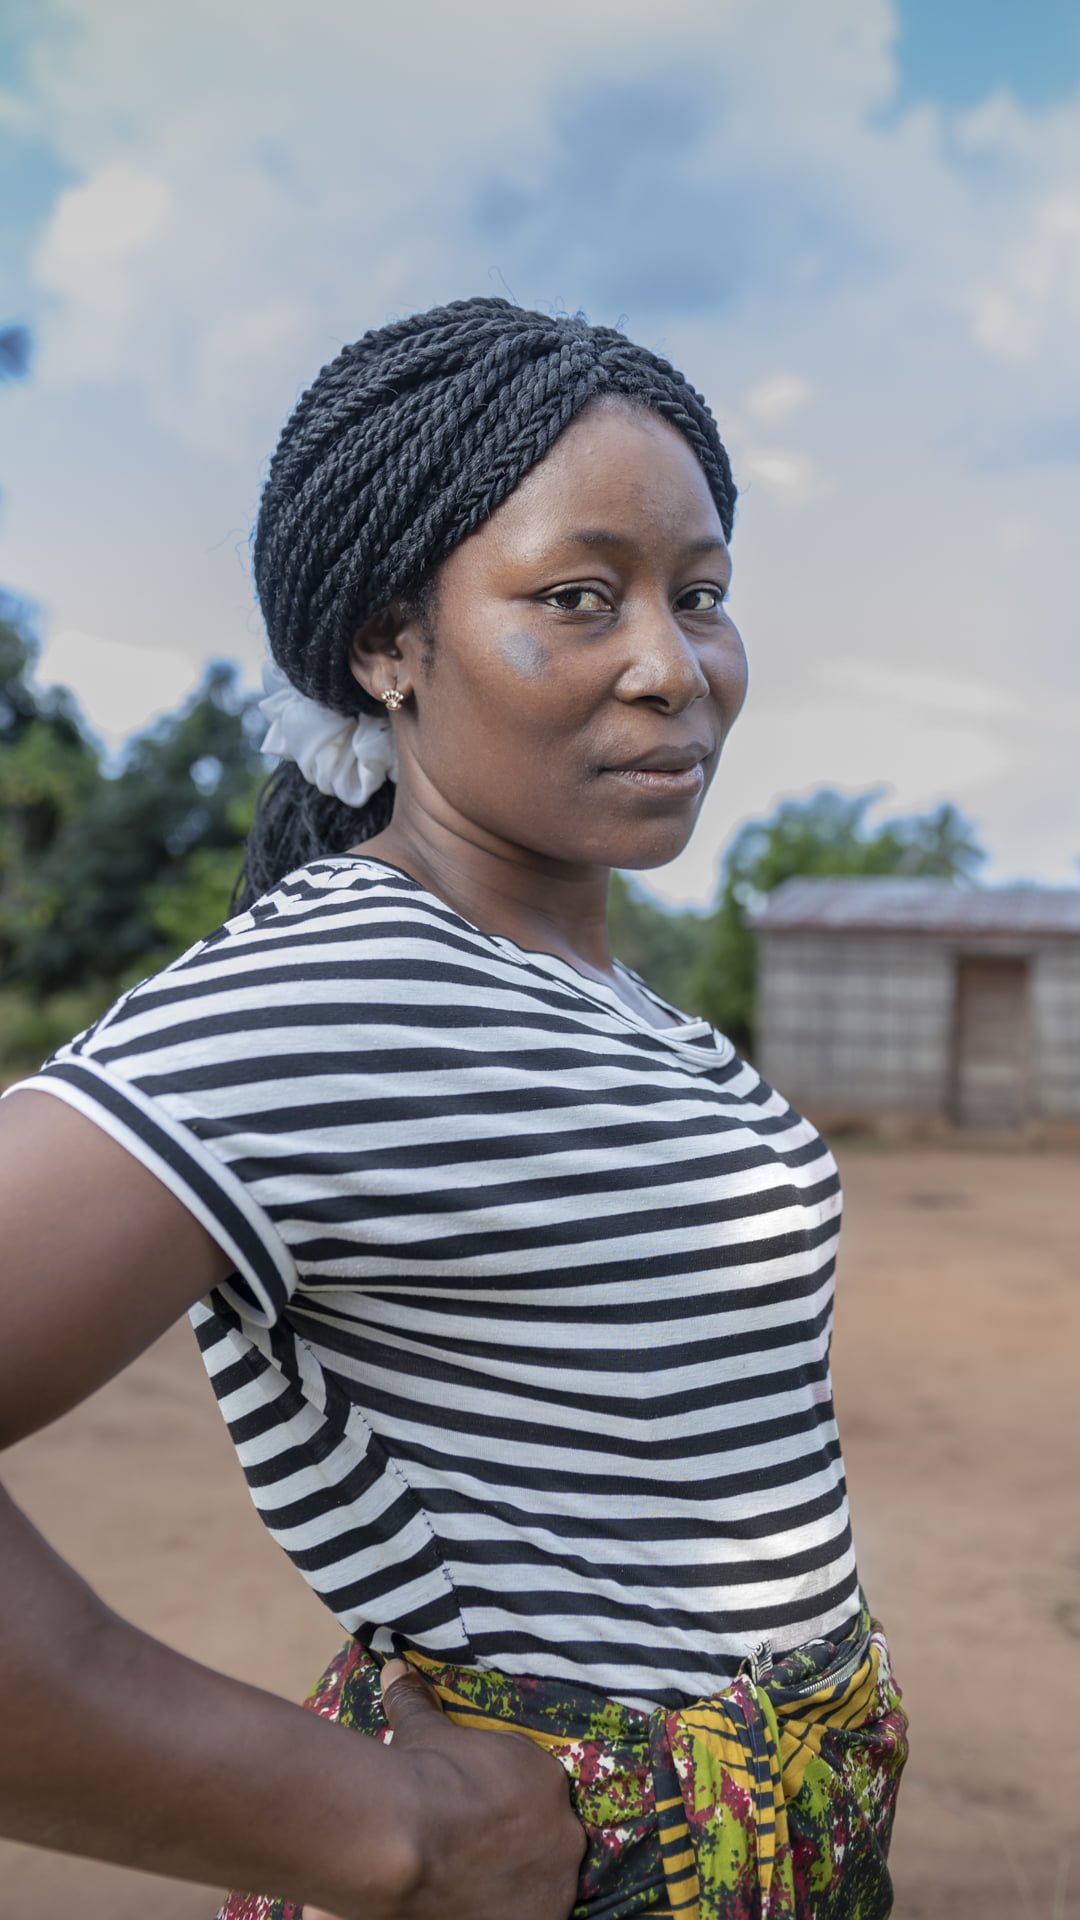 Mosambikilainen Helena seisoo yhteisössään määrätietoisesti kameraan katsoen.